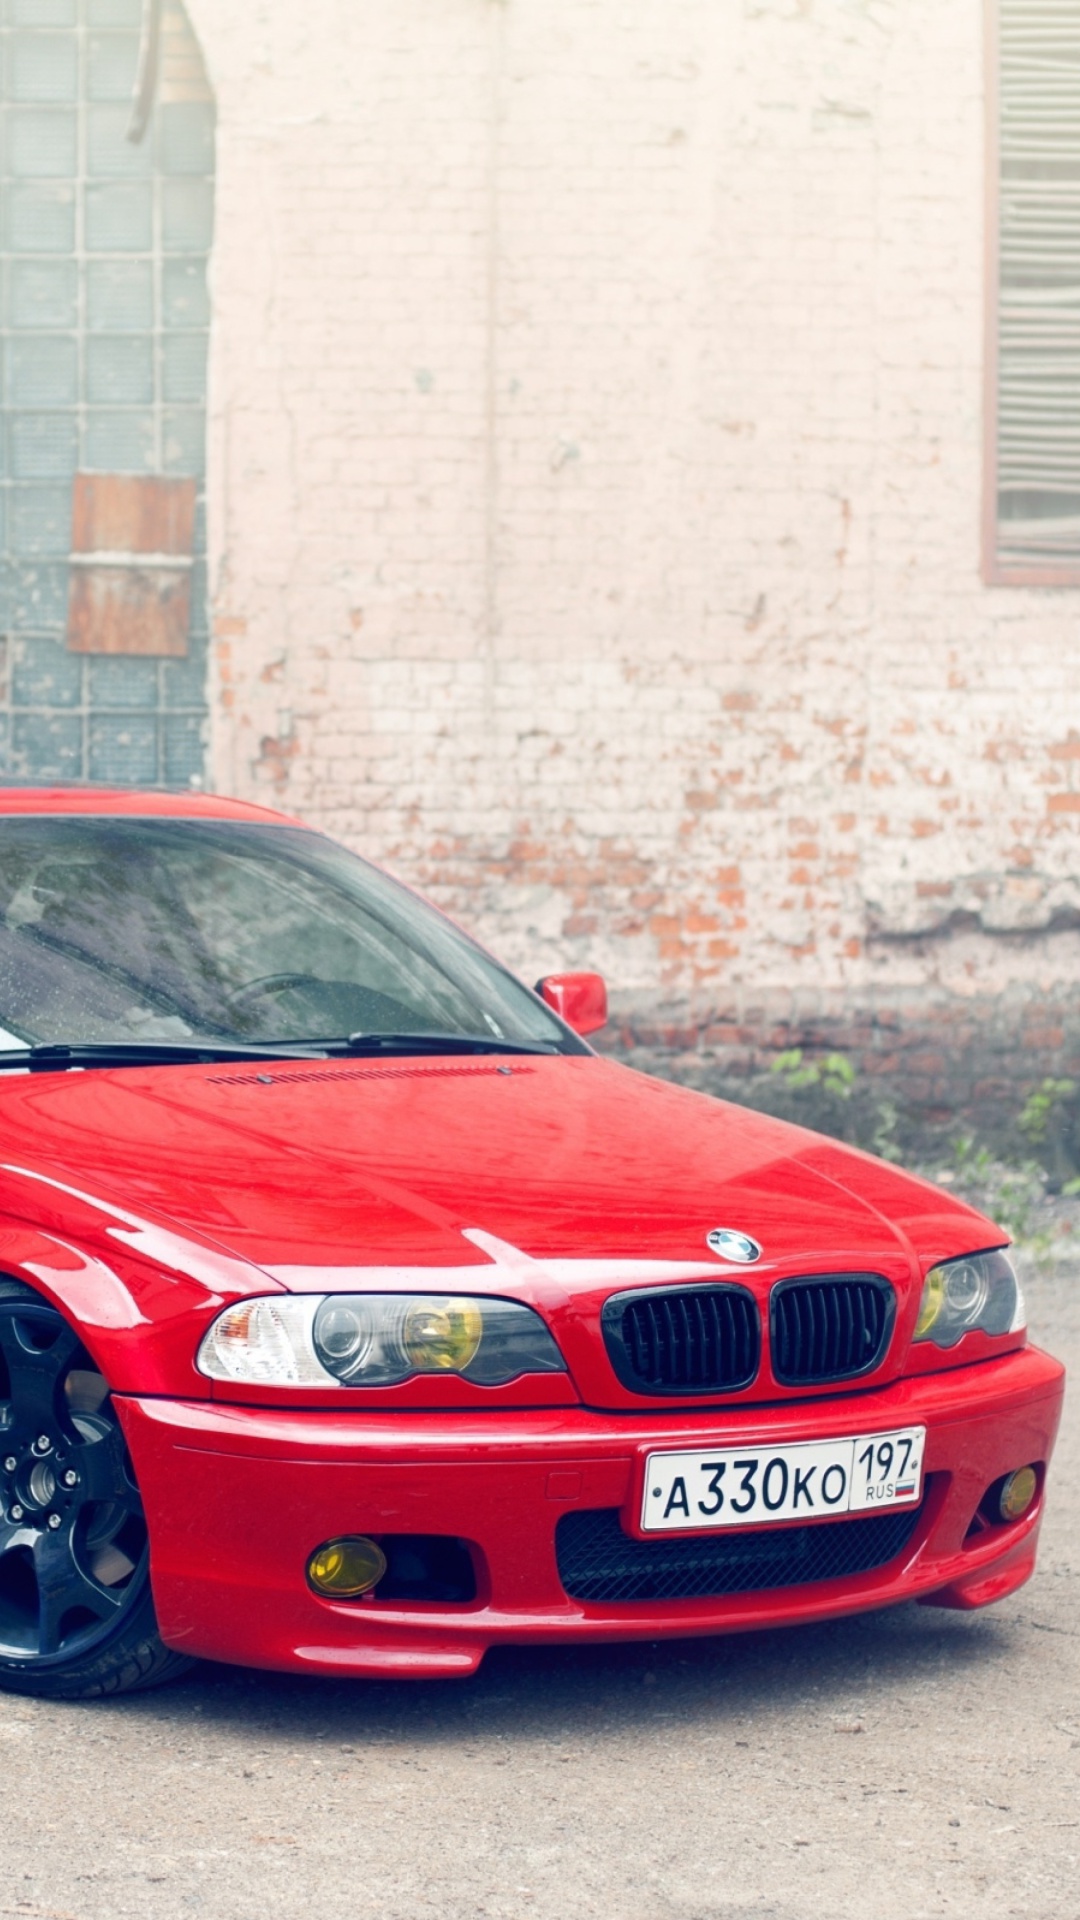 Das BMW E46 Stance Wallpaper 1080x1920